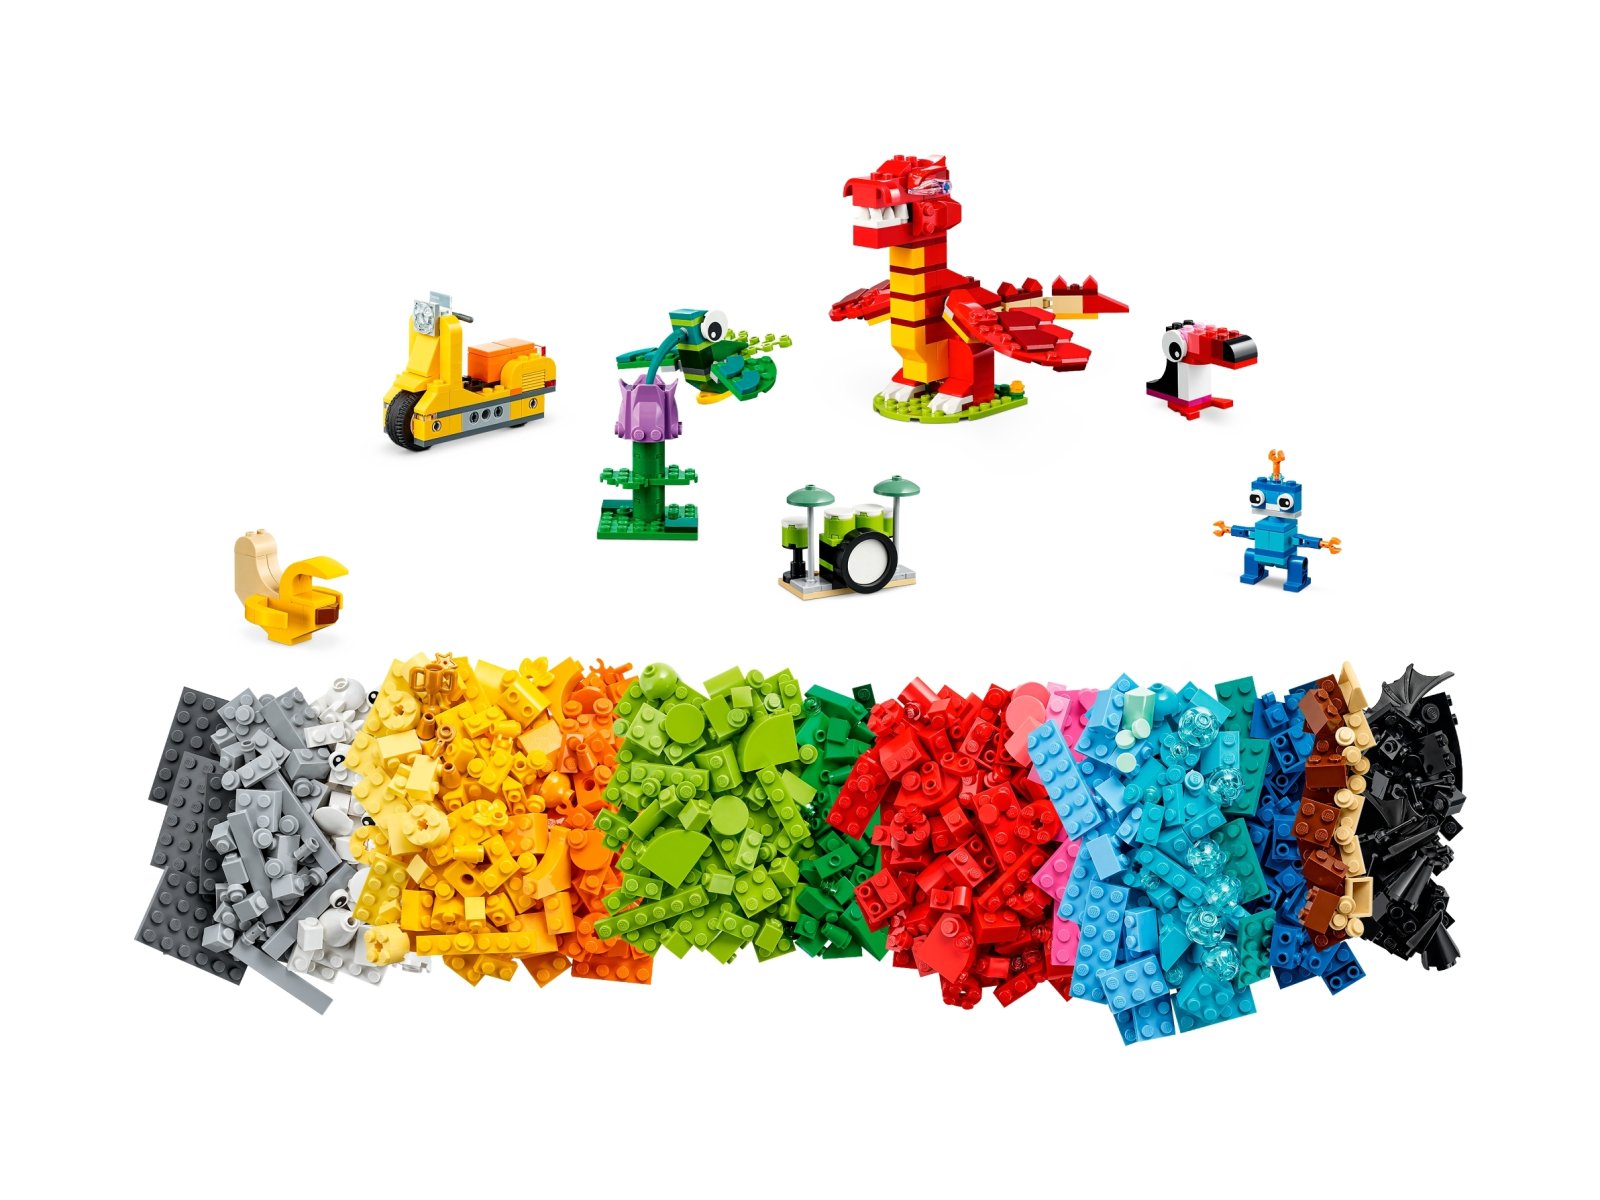 LEGO Classic Wspólne budowanie 11020